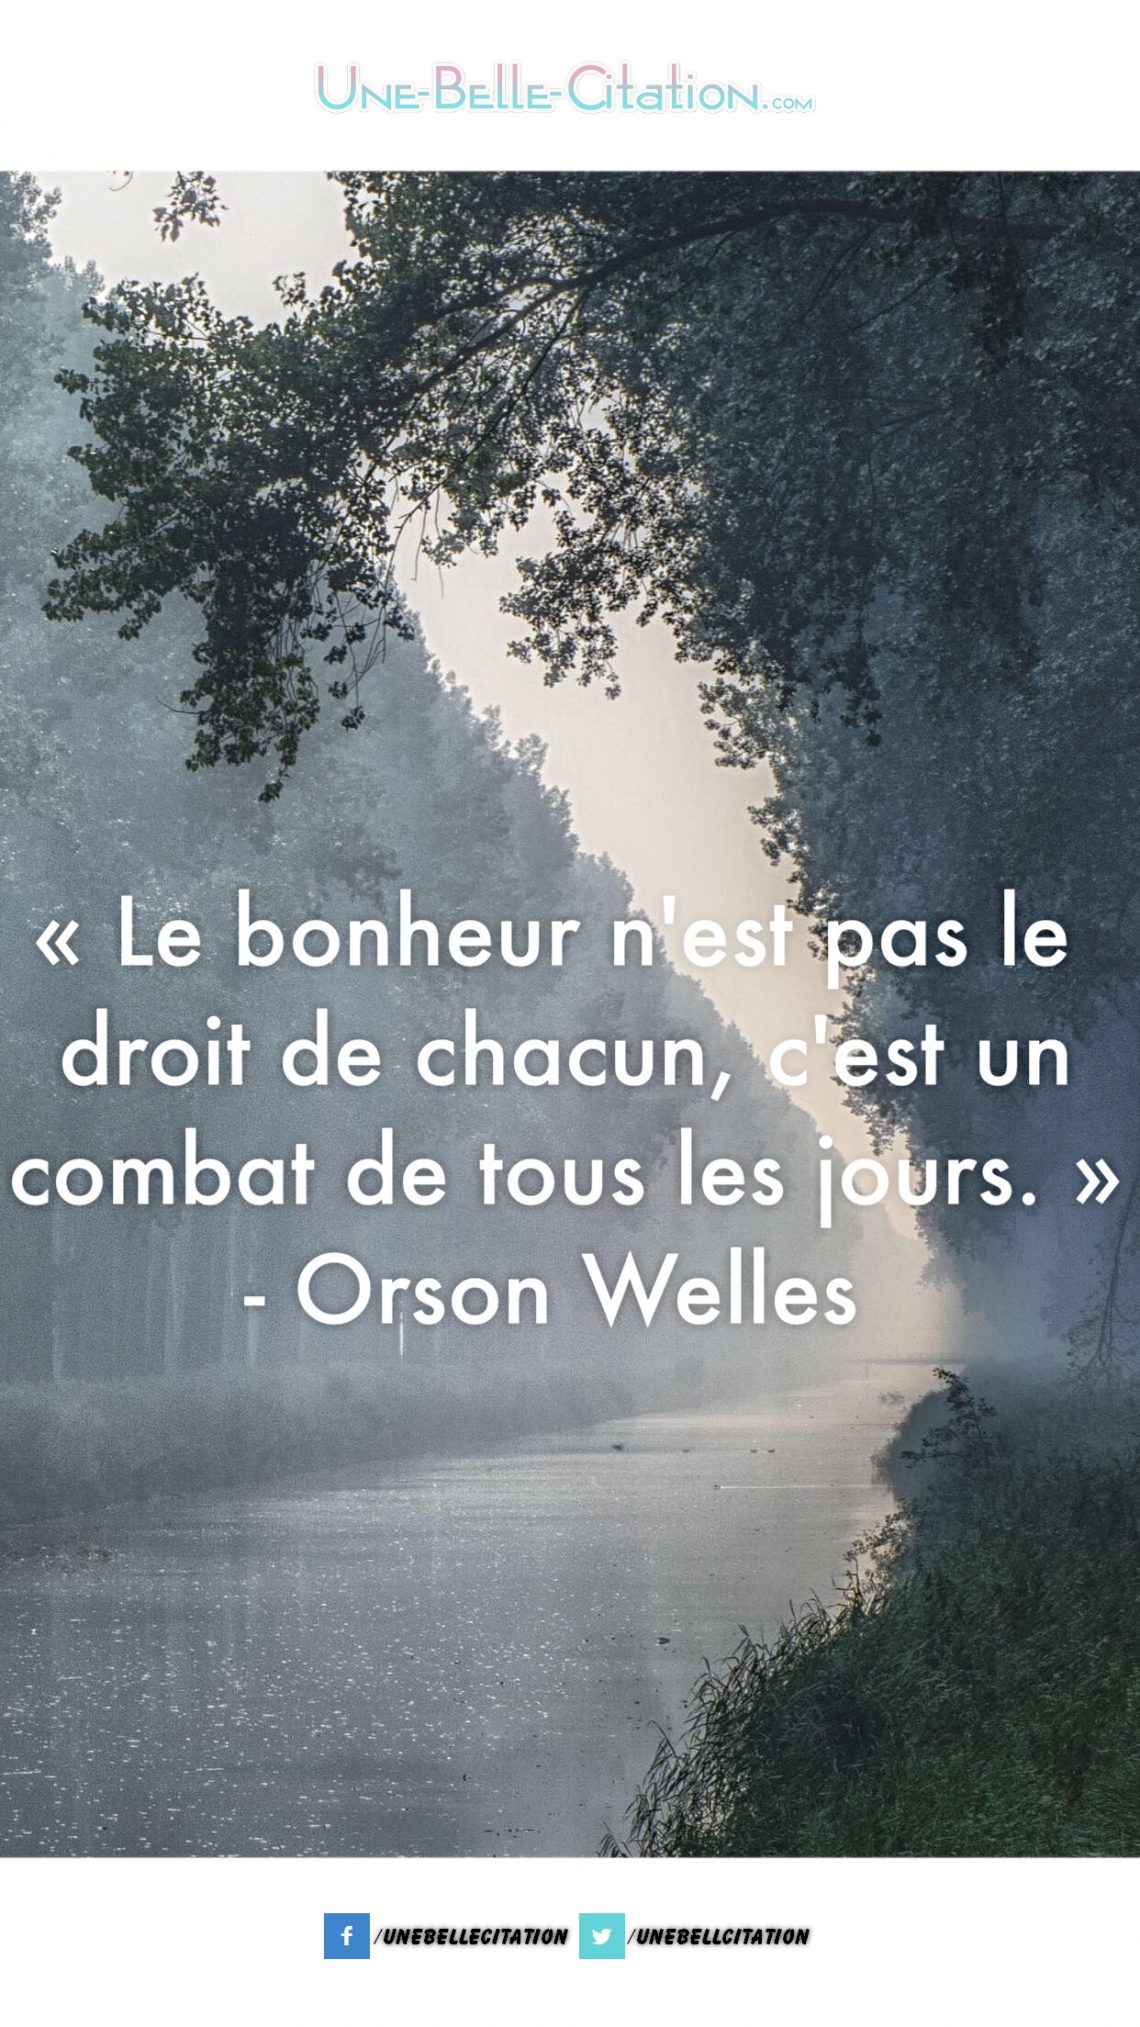 « Le bonheur n’est pas le droit de chacun, c’est le combat de tous les jours. » – Orson Welles